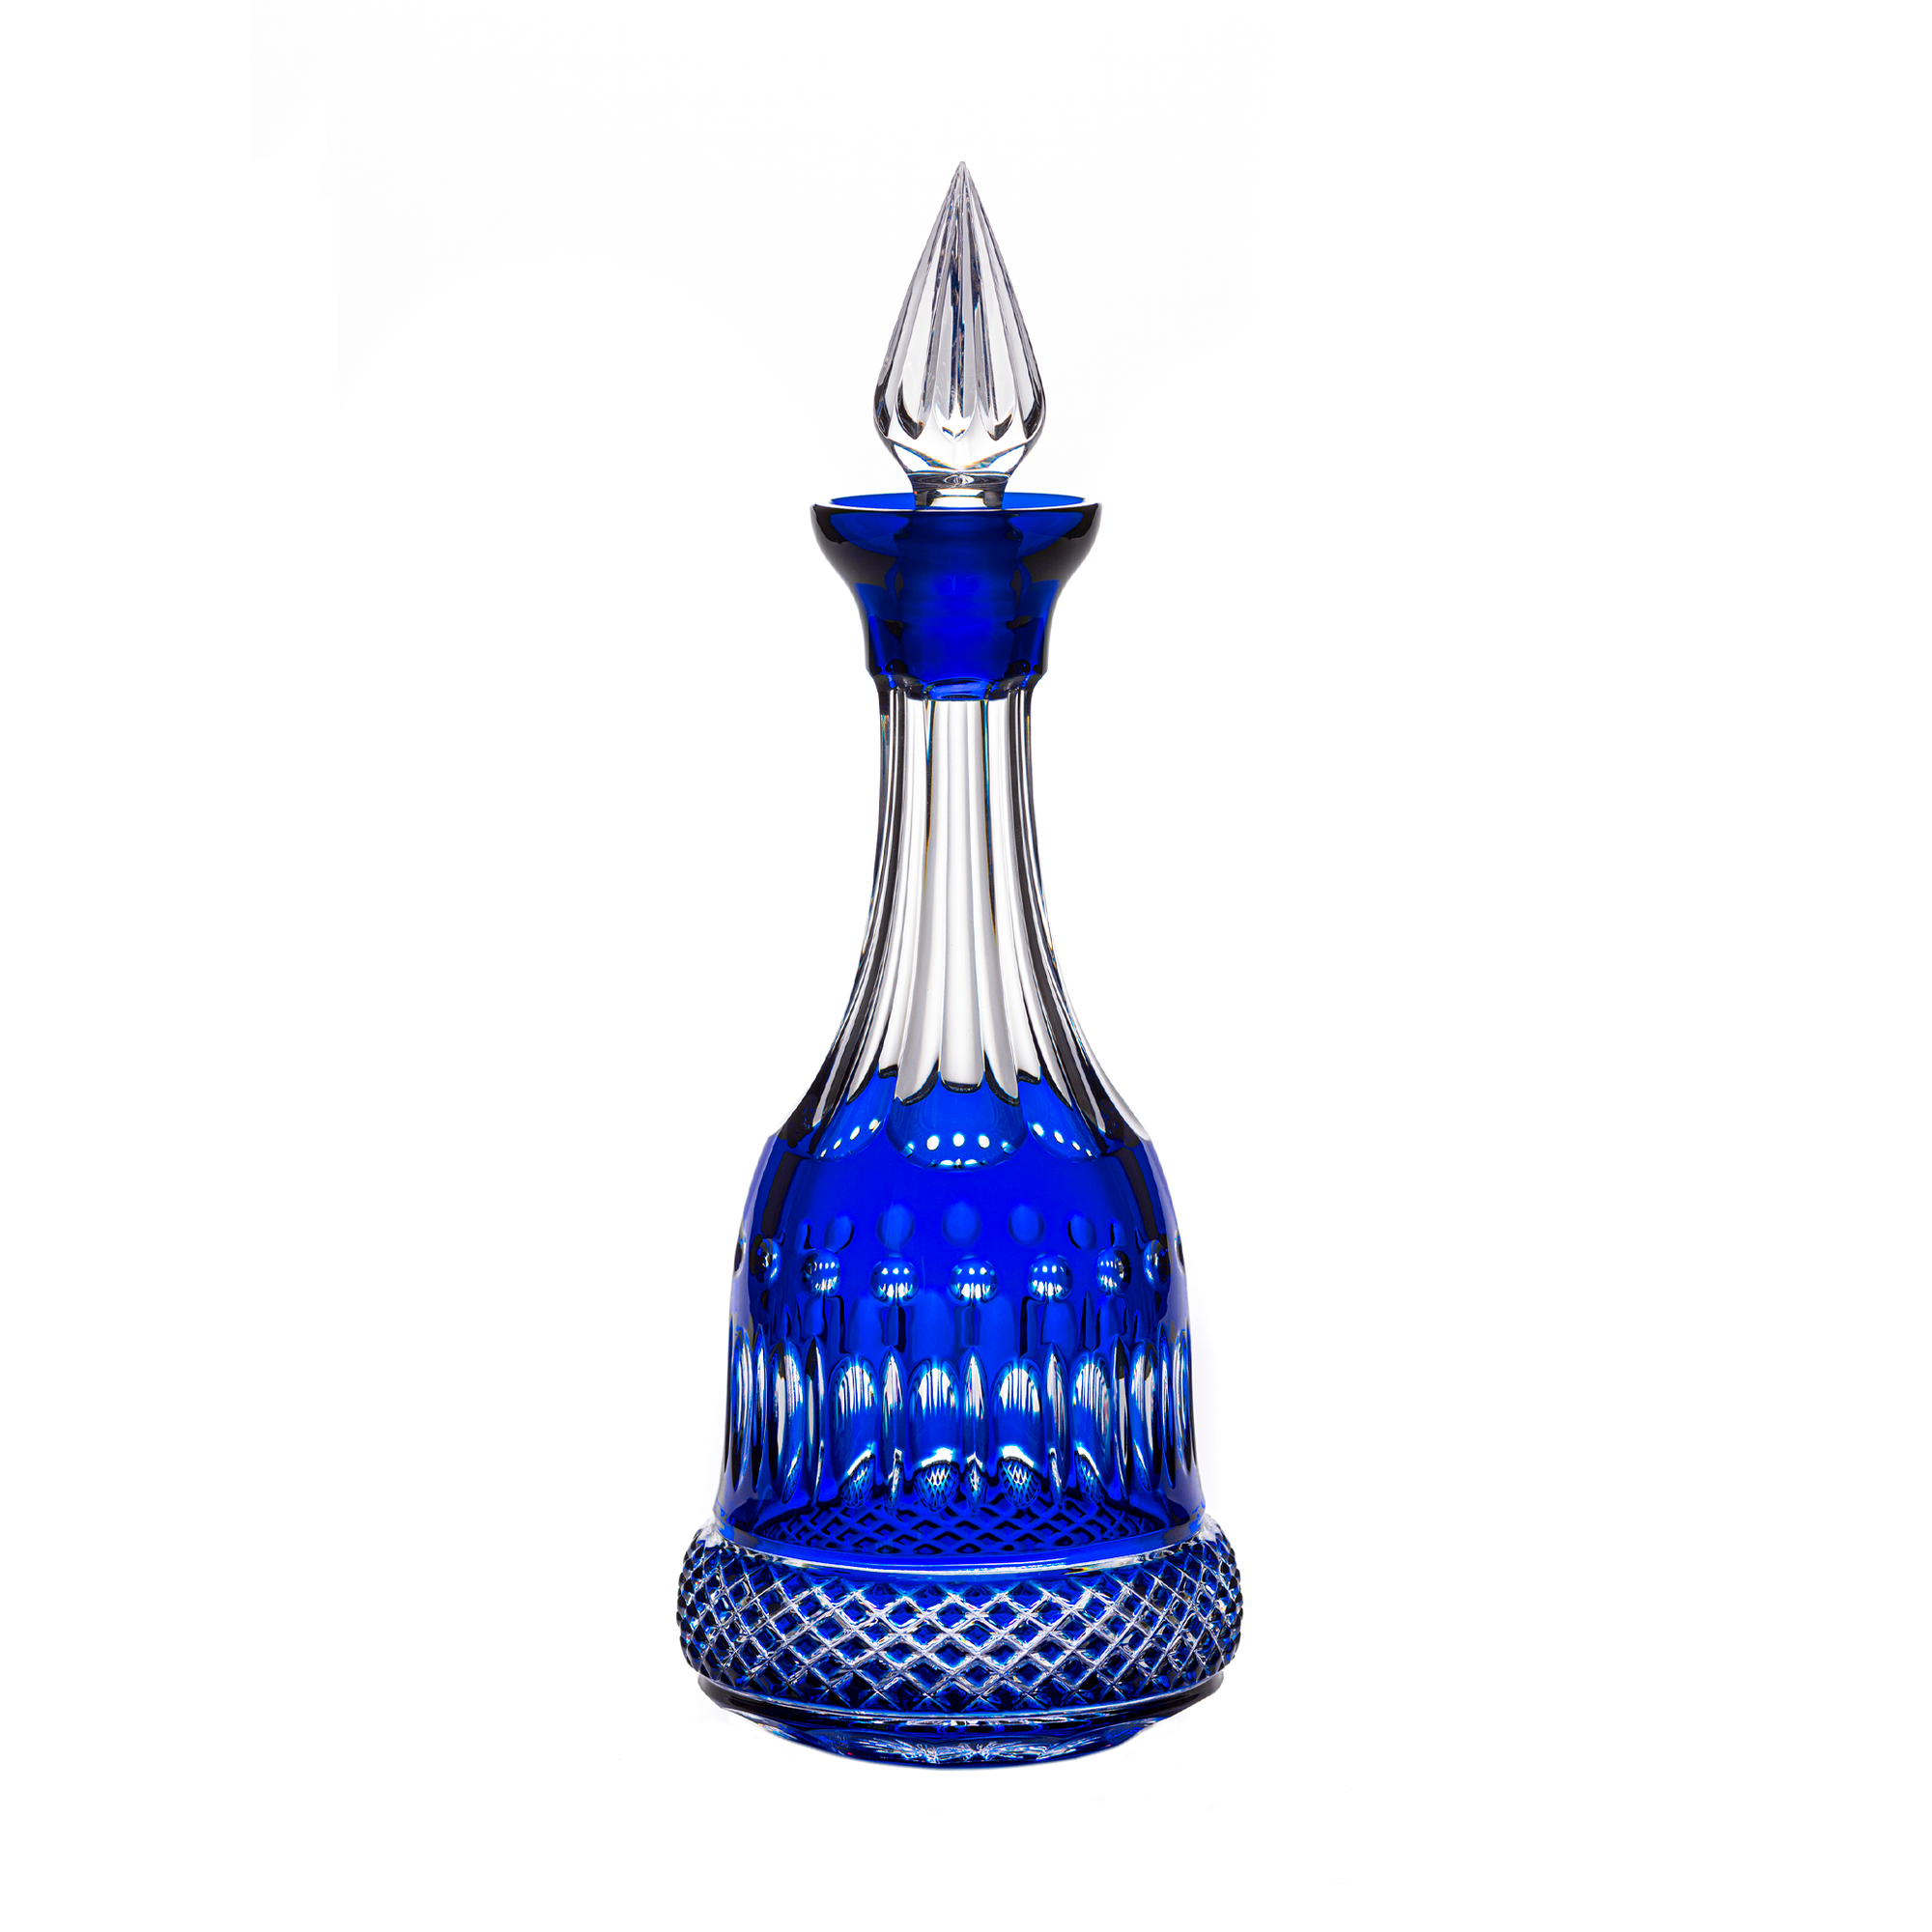 Fabergé Xenia Blue Decanter 25.4 oz